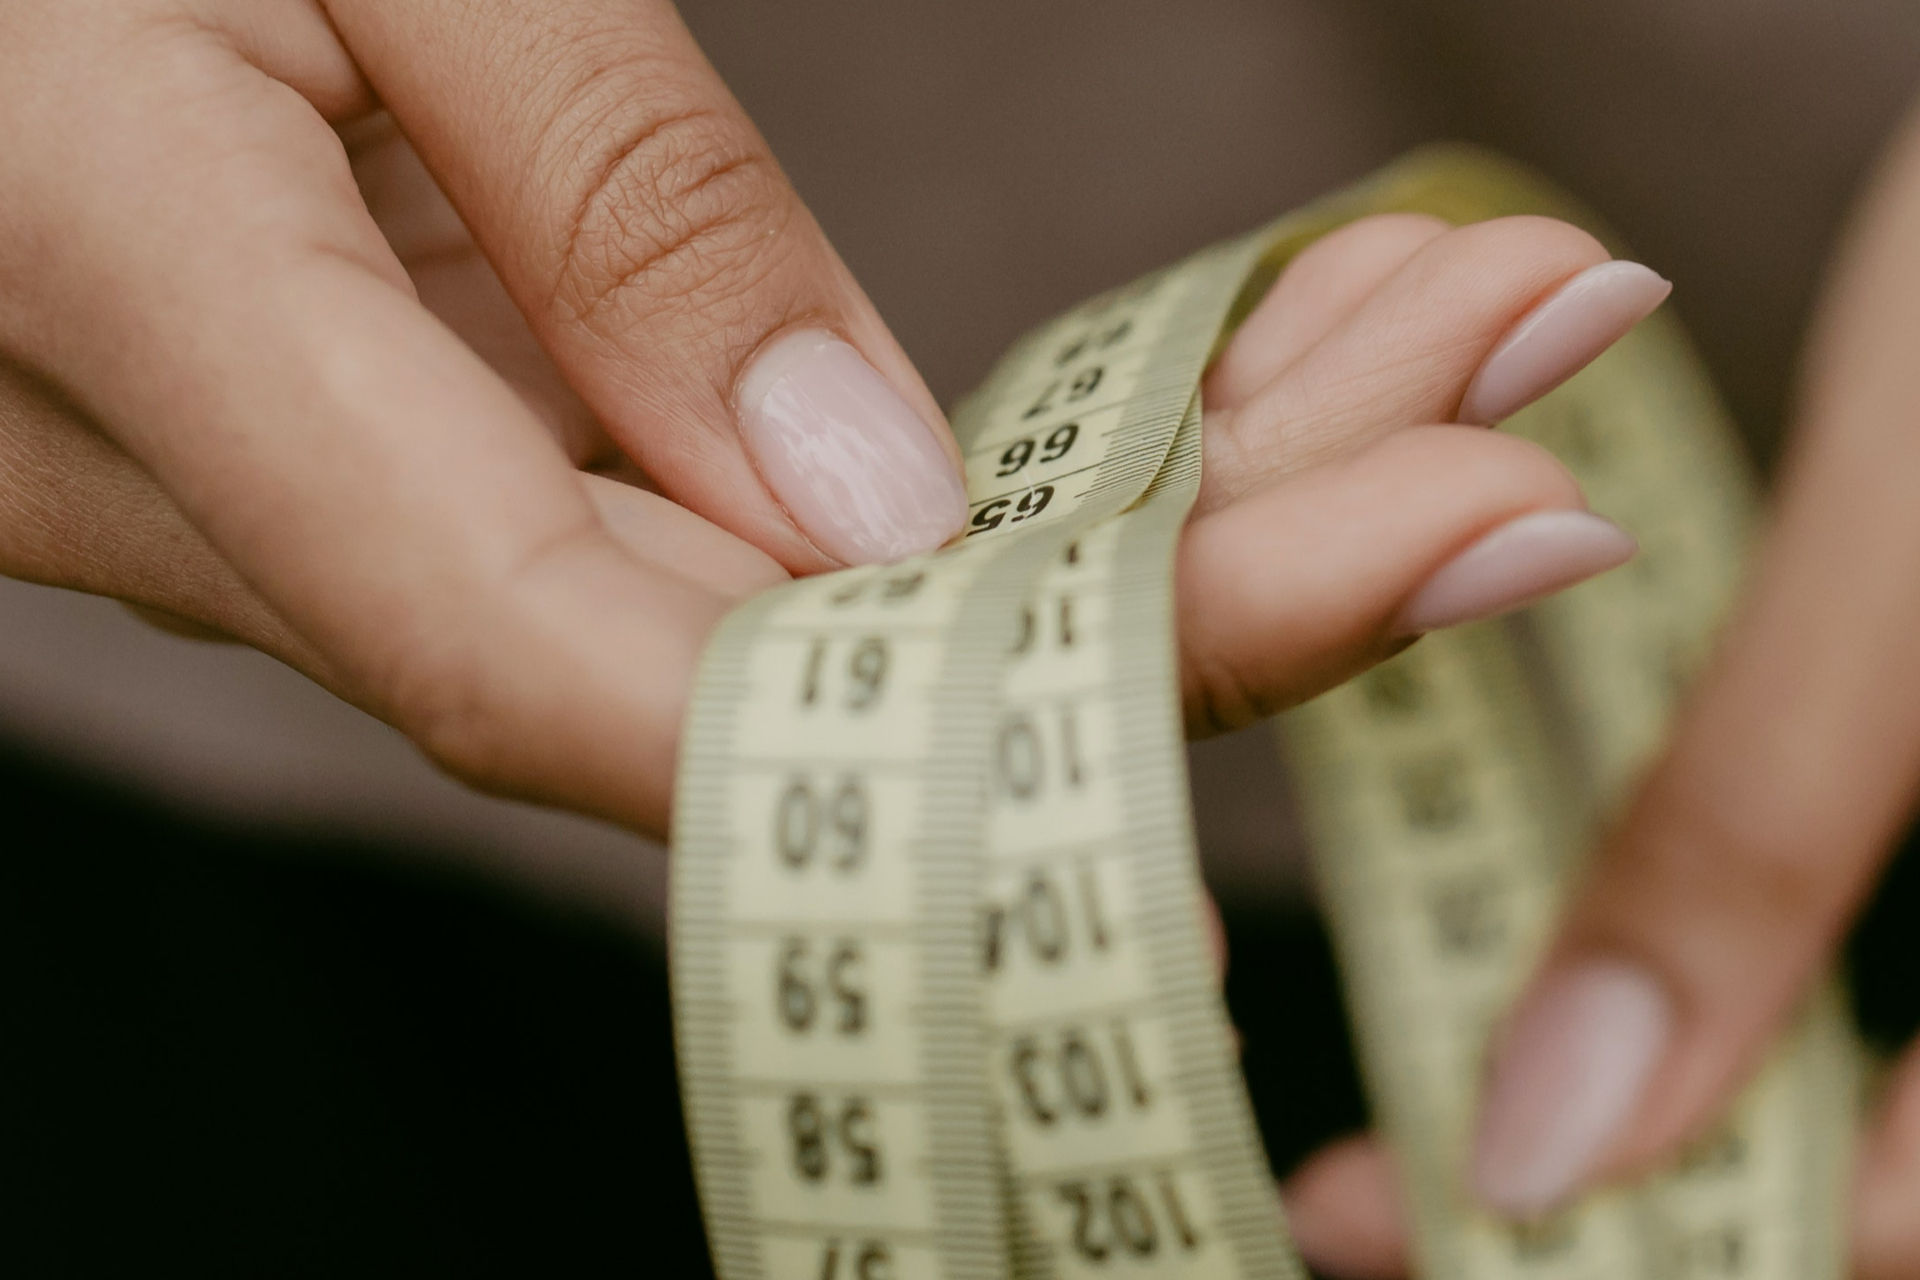 Равномерность потери веса часто зависит от фигуры. Например, у людей типа &laquo;яблоко&raquo;, в первую очередь, худеют ноги, у&nbsp;типа А-силует или &laquo;груша&raquo; медленнее уходит жир на бедрах. У &laquo;прямоугольников&raquo; жир уходит равномерно, говорит эксперт.